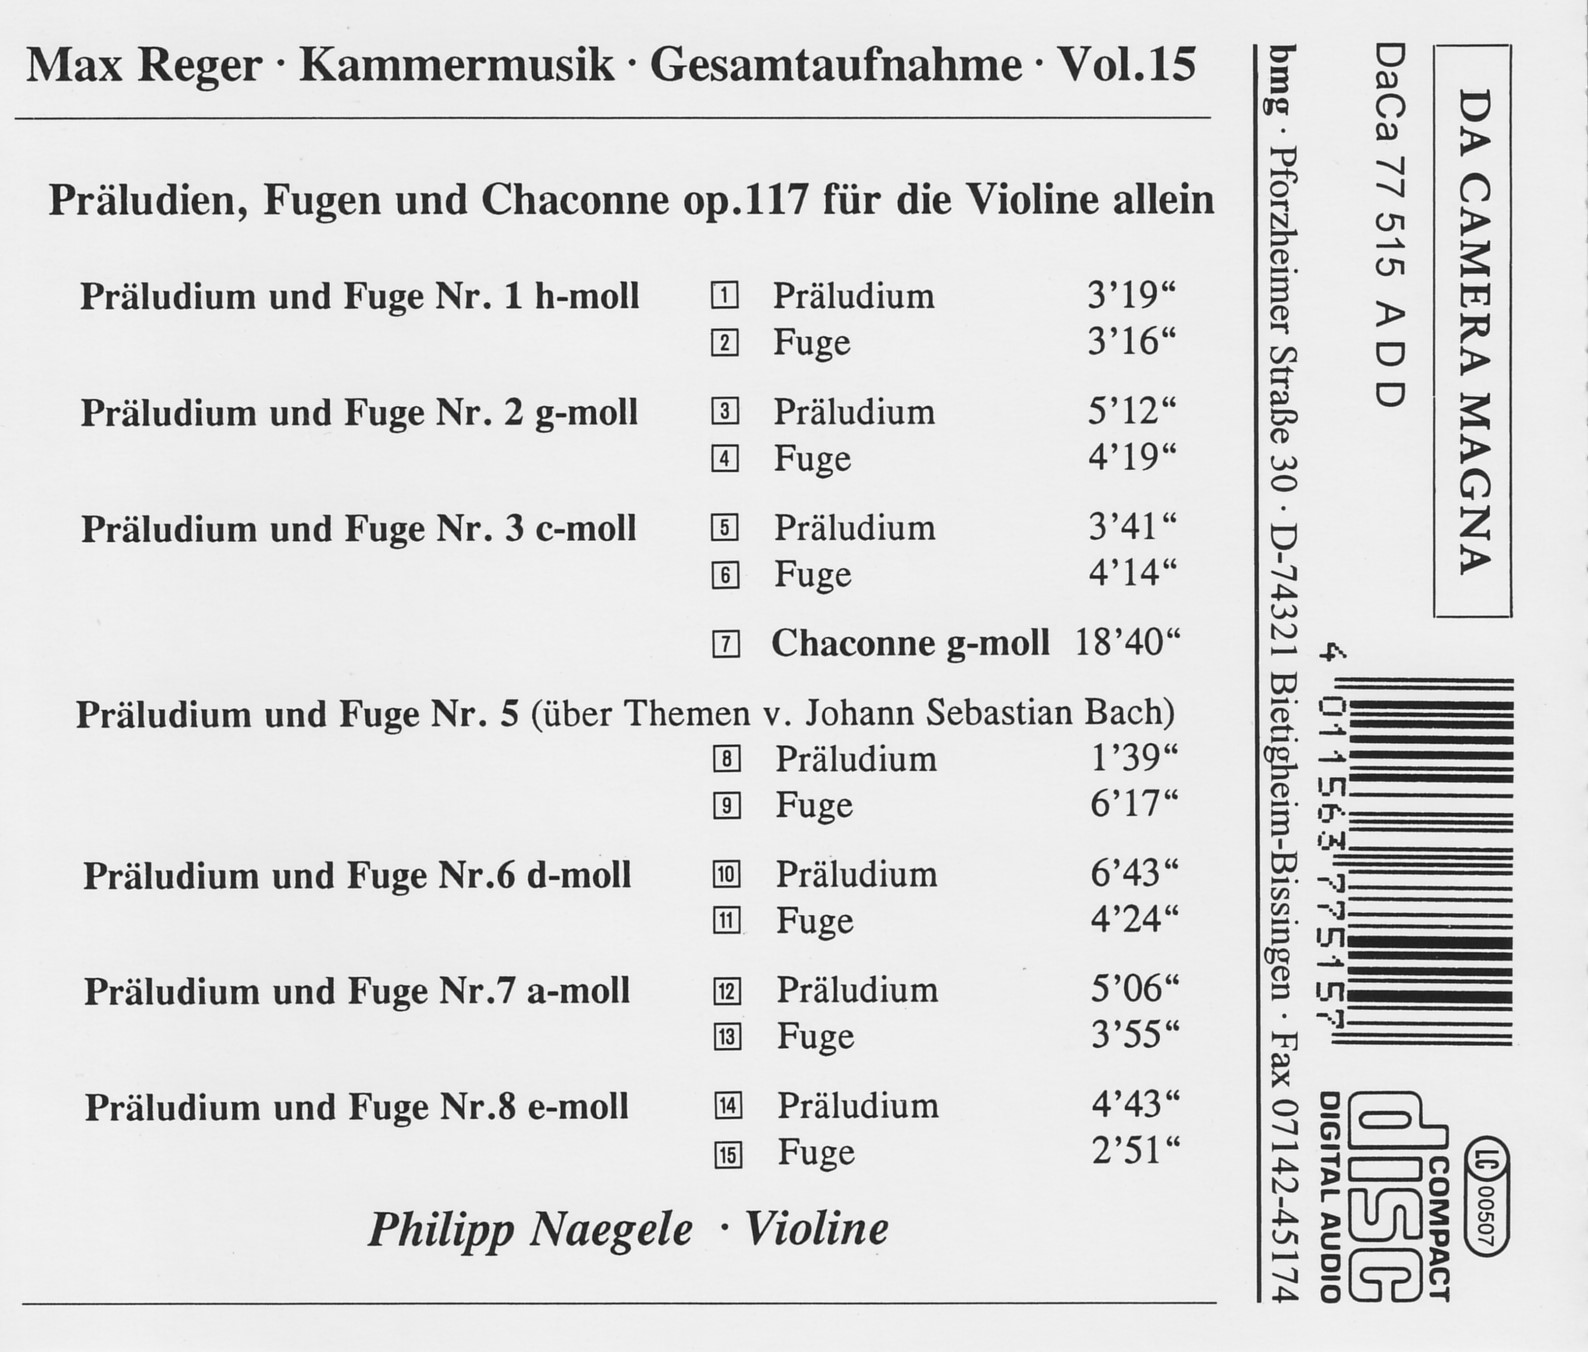 Max Reger - Kammermusik komplett Vol. 15